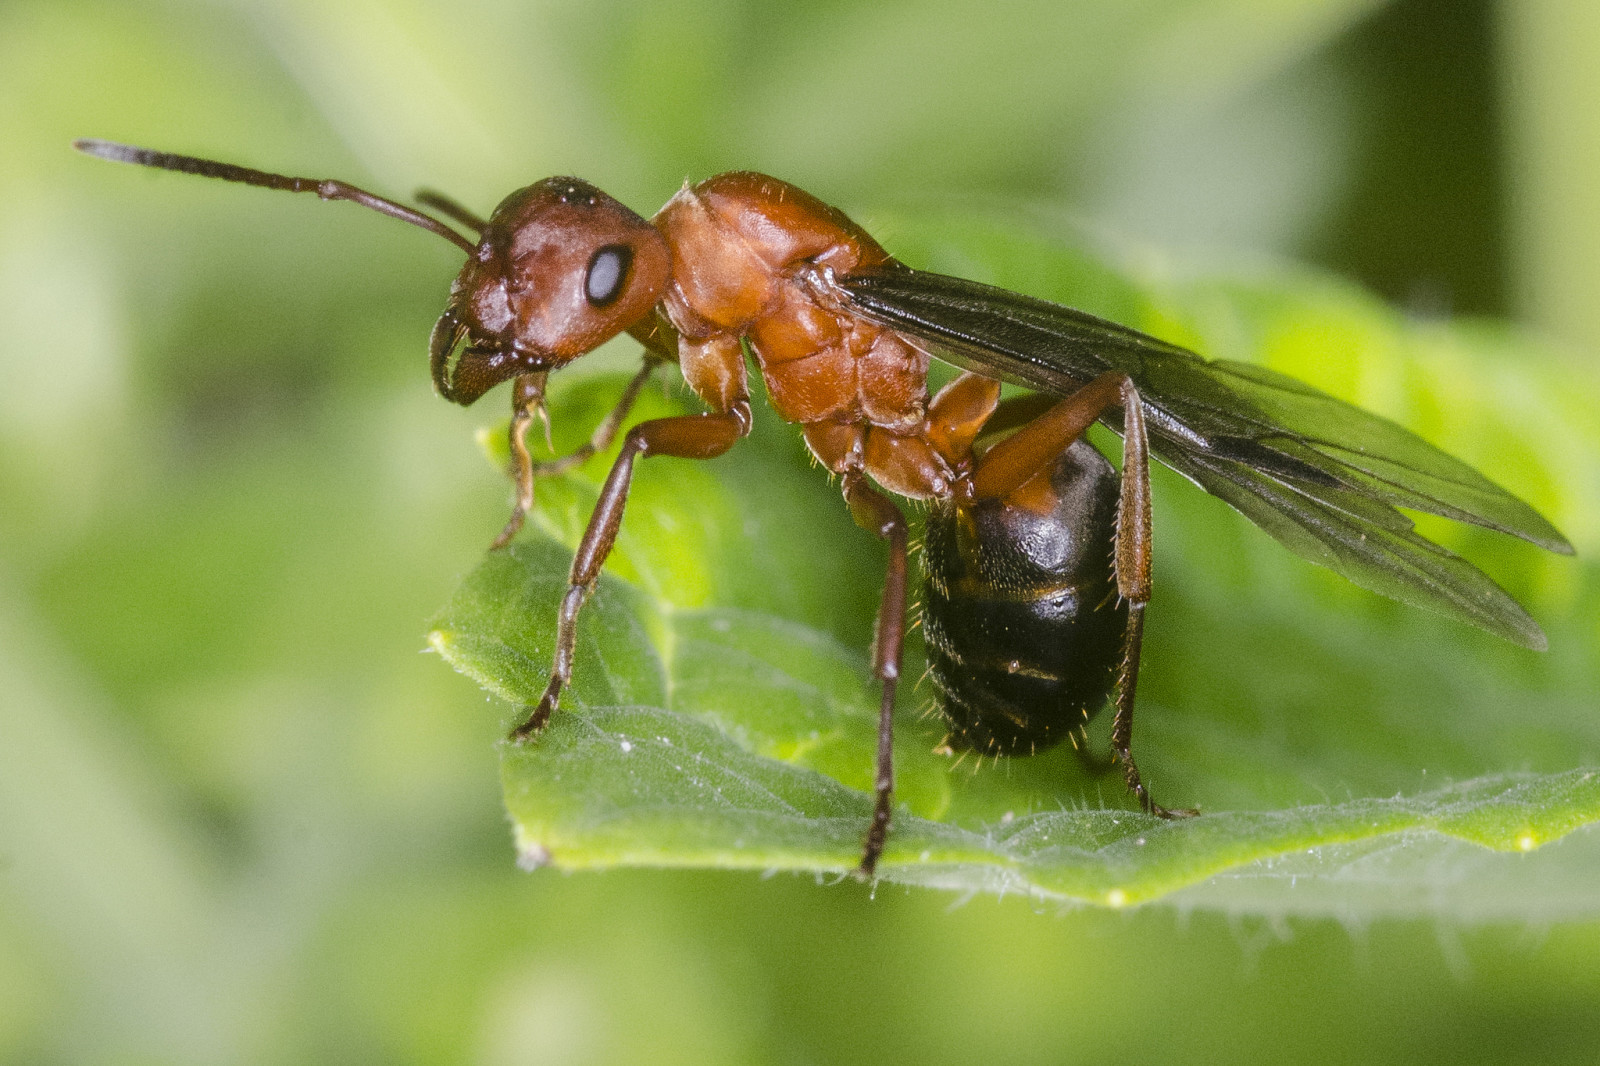 Сколько живут муравьи разных видов?